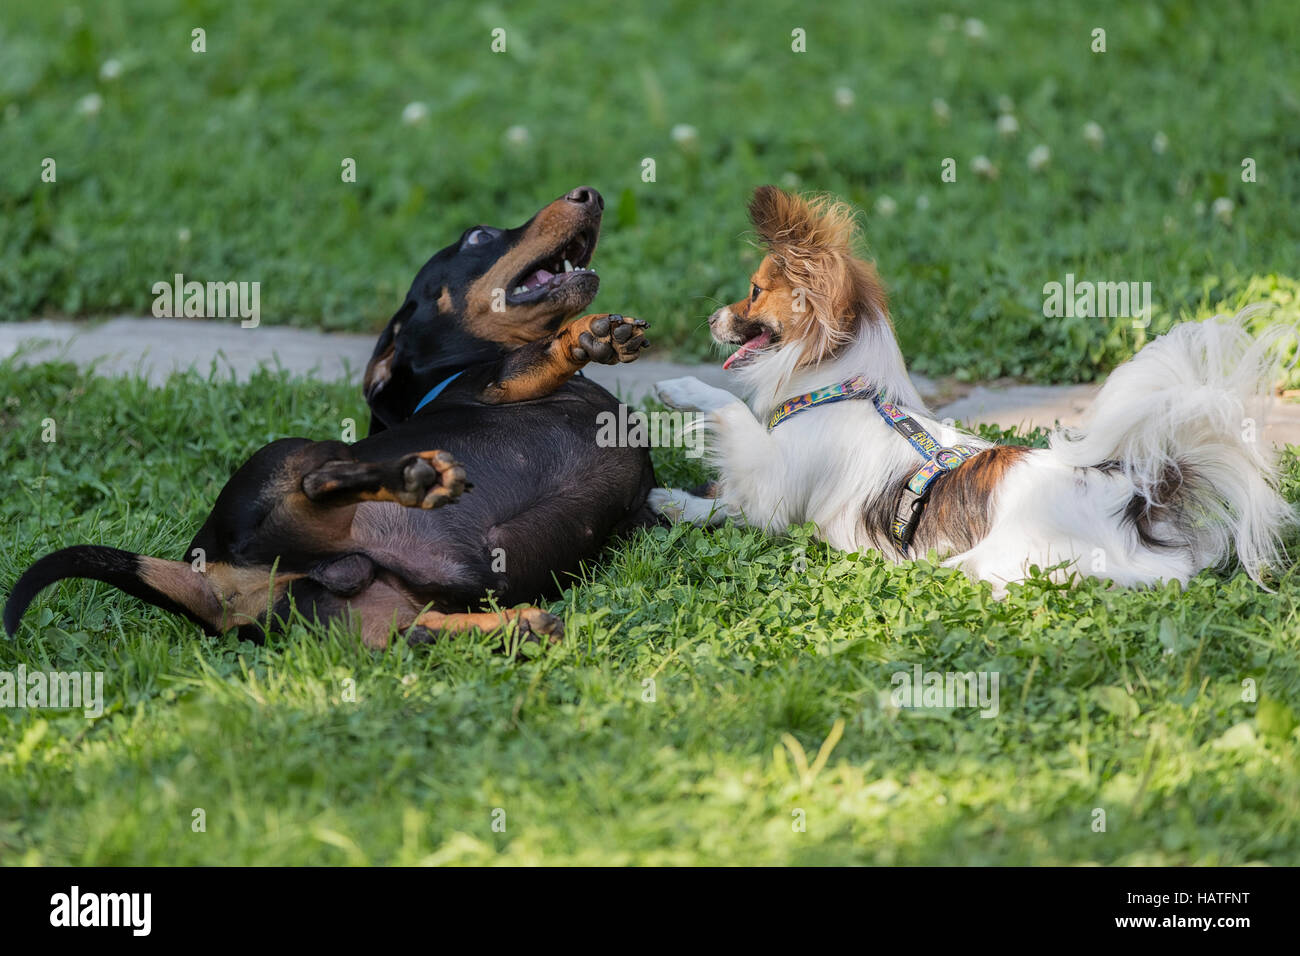 Papillon cane e un bassotto nero gioca con l'altra sull'erba verde Foto Stock